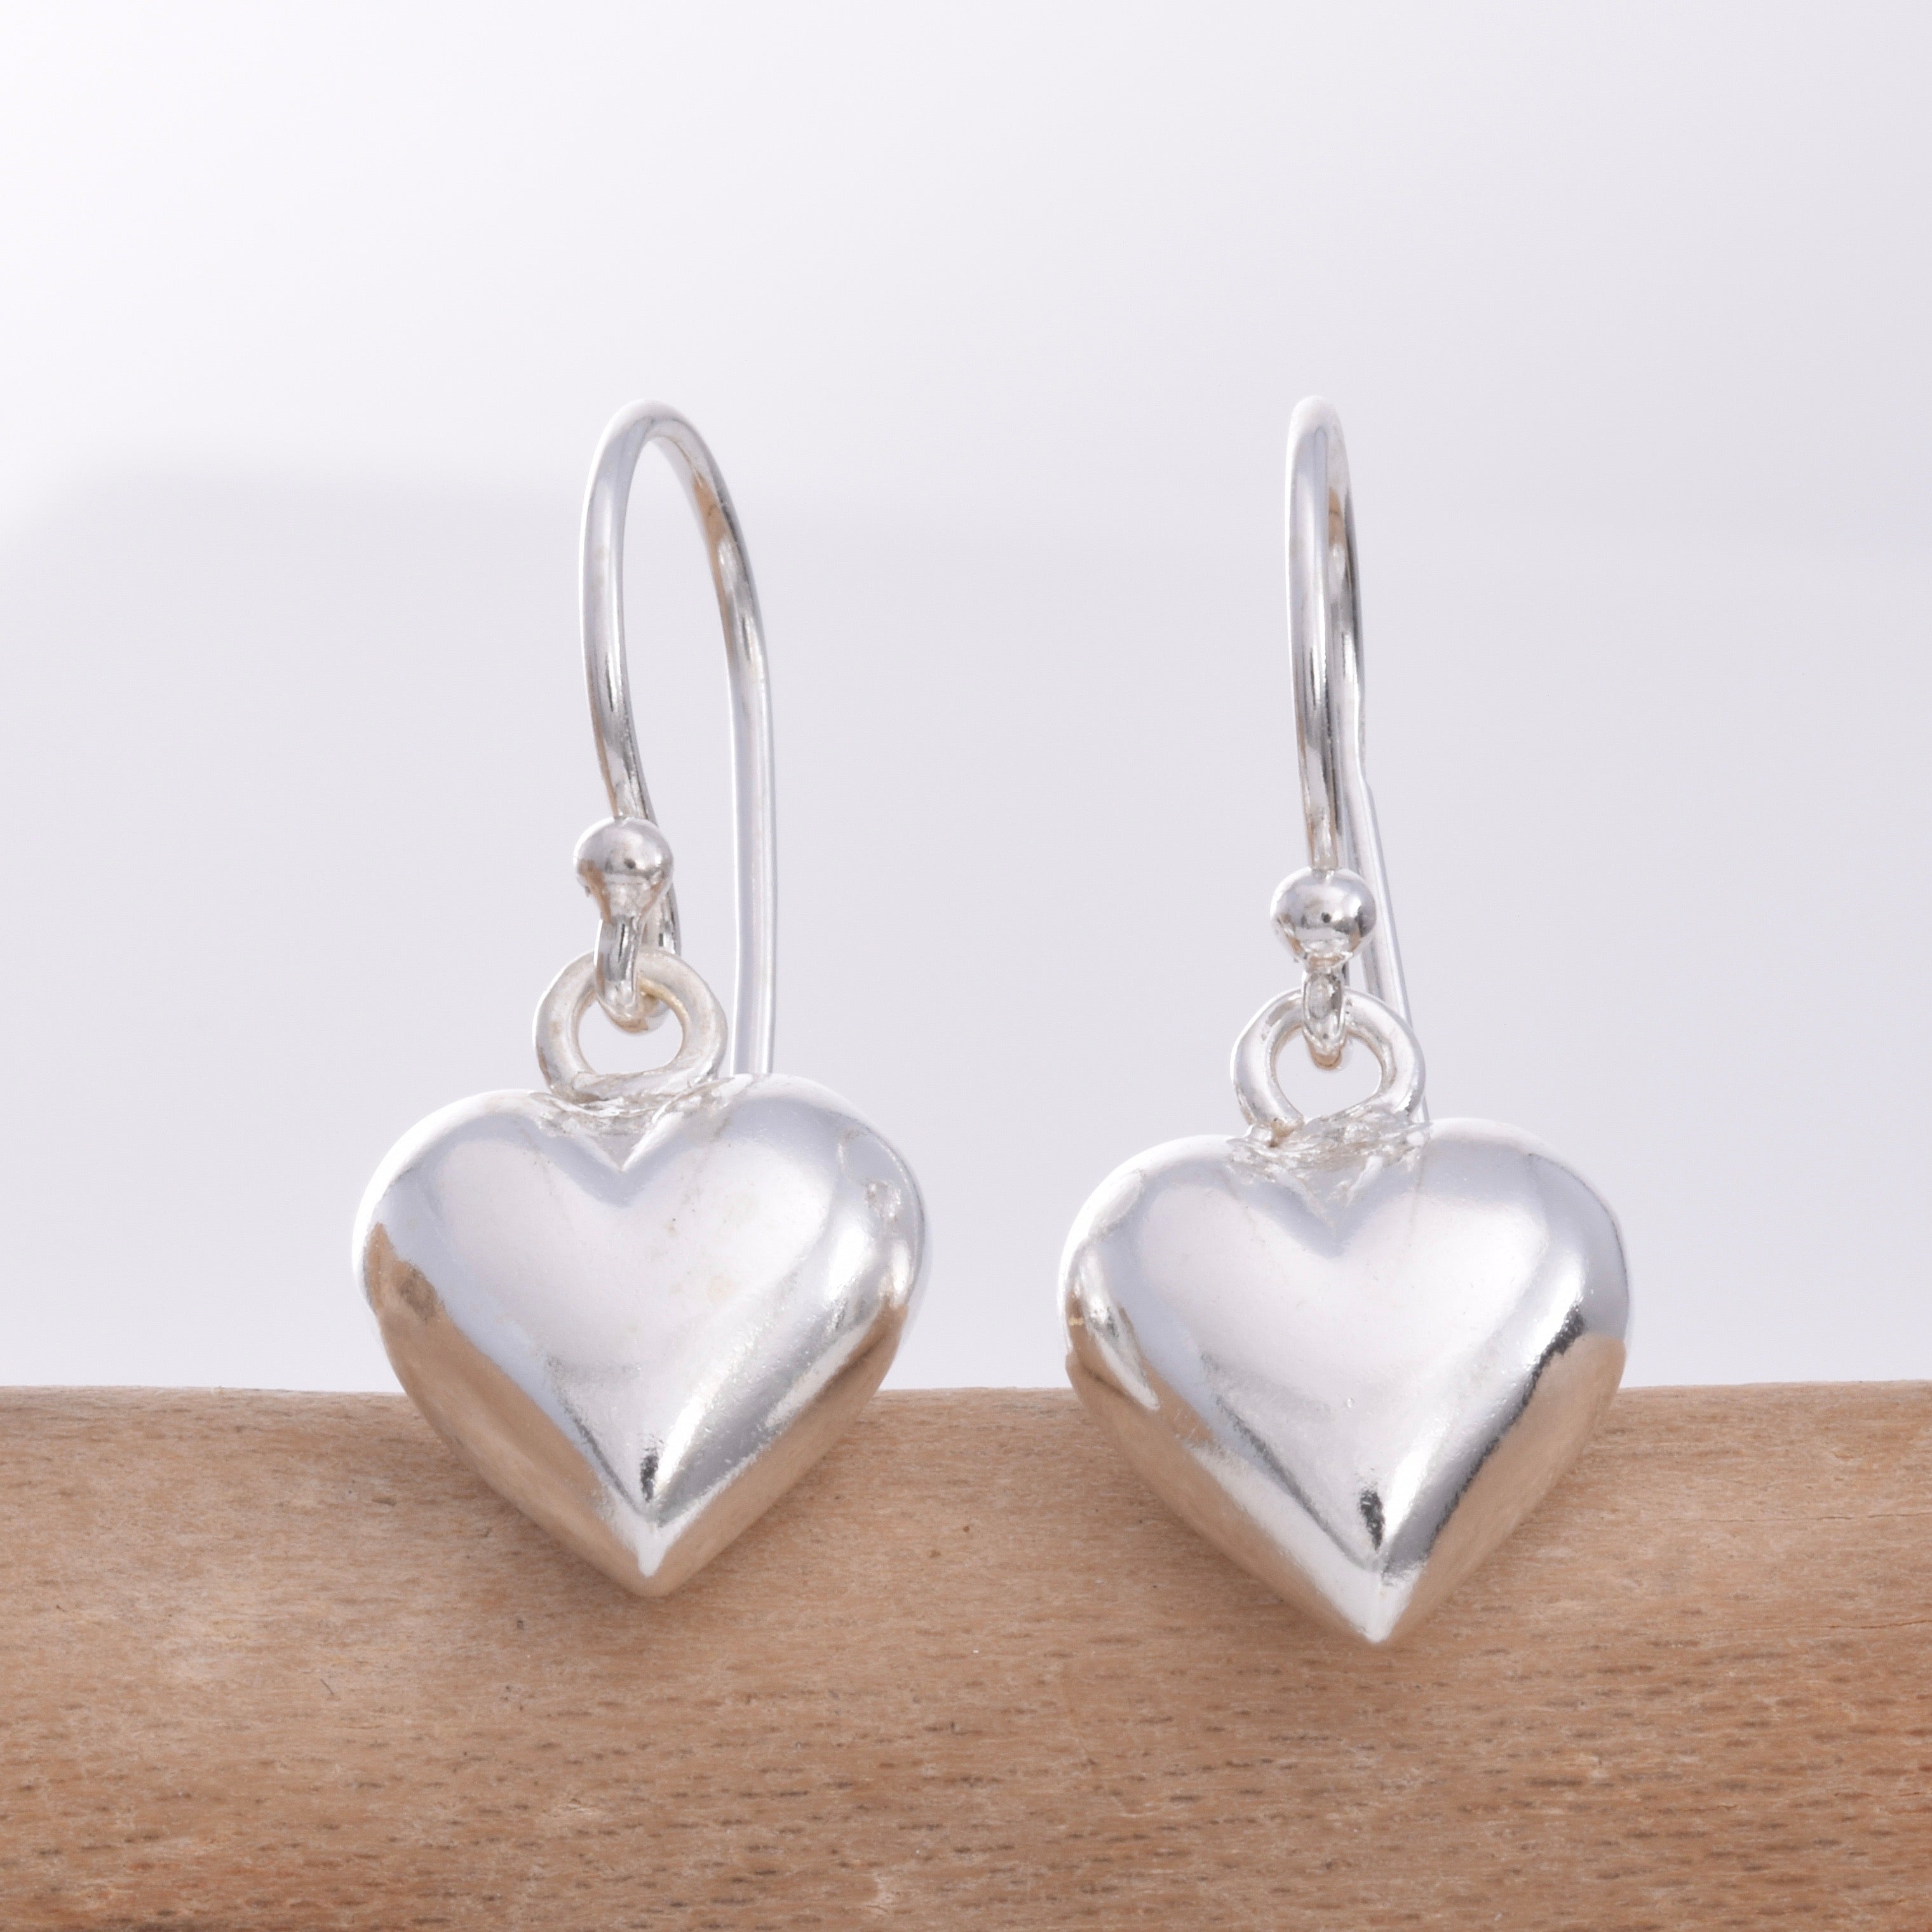 Heart Hoop Earrings Large Sterling Silver Puffy Heart Dangle Huggie Earring